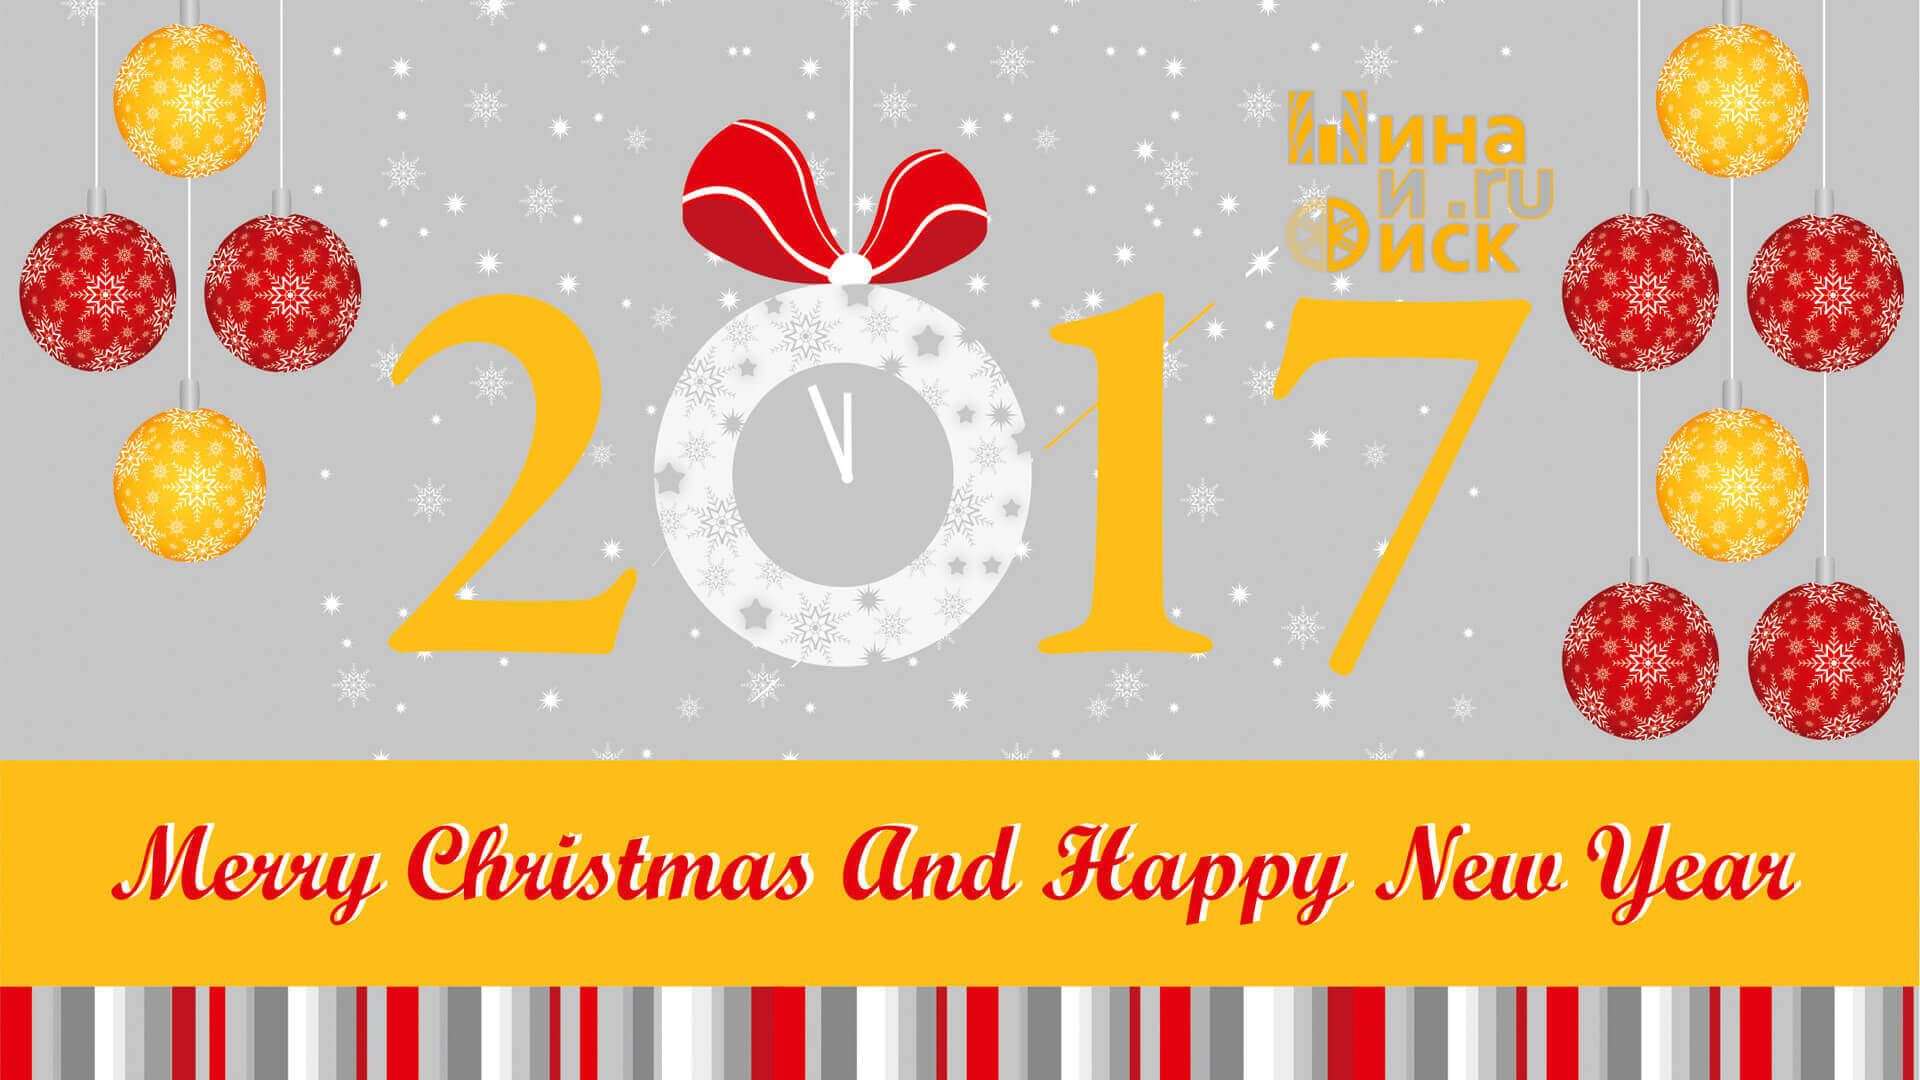 Шина и диск.ru поздравляет всех с новым 2017 годом!